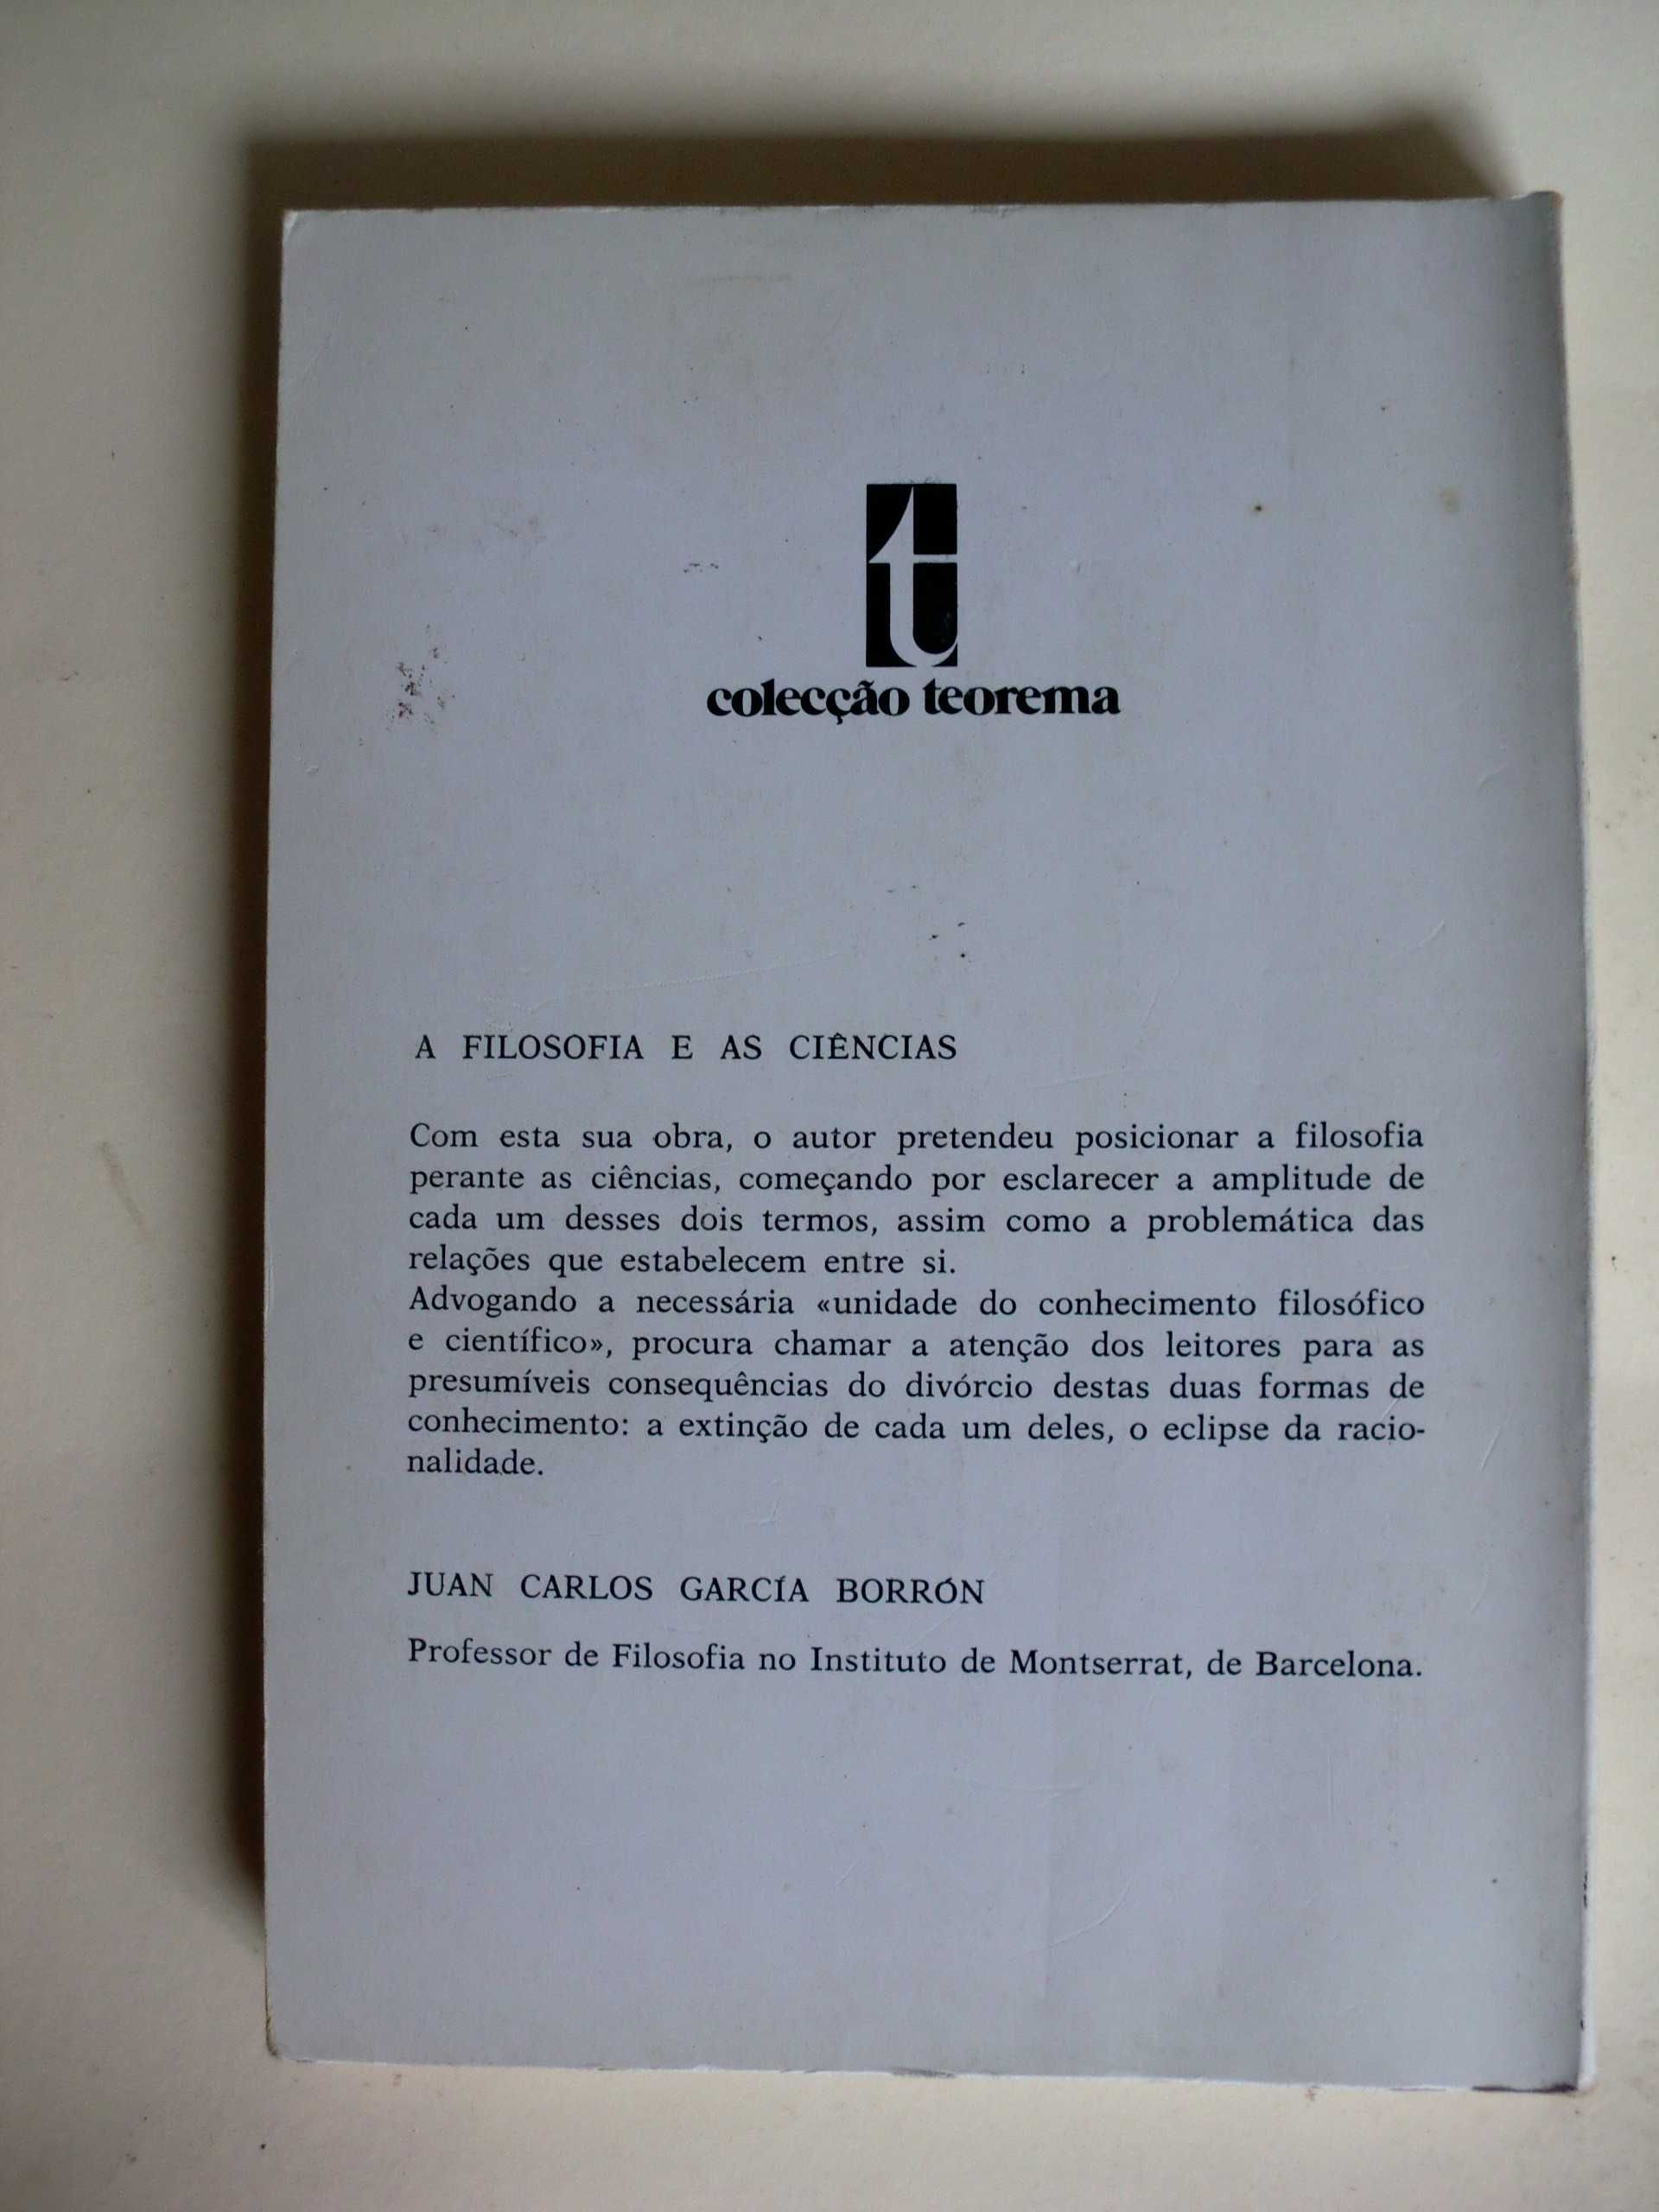 A Filosofia e as Ciências
de Juan Carlos García Borrón